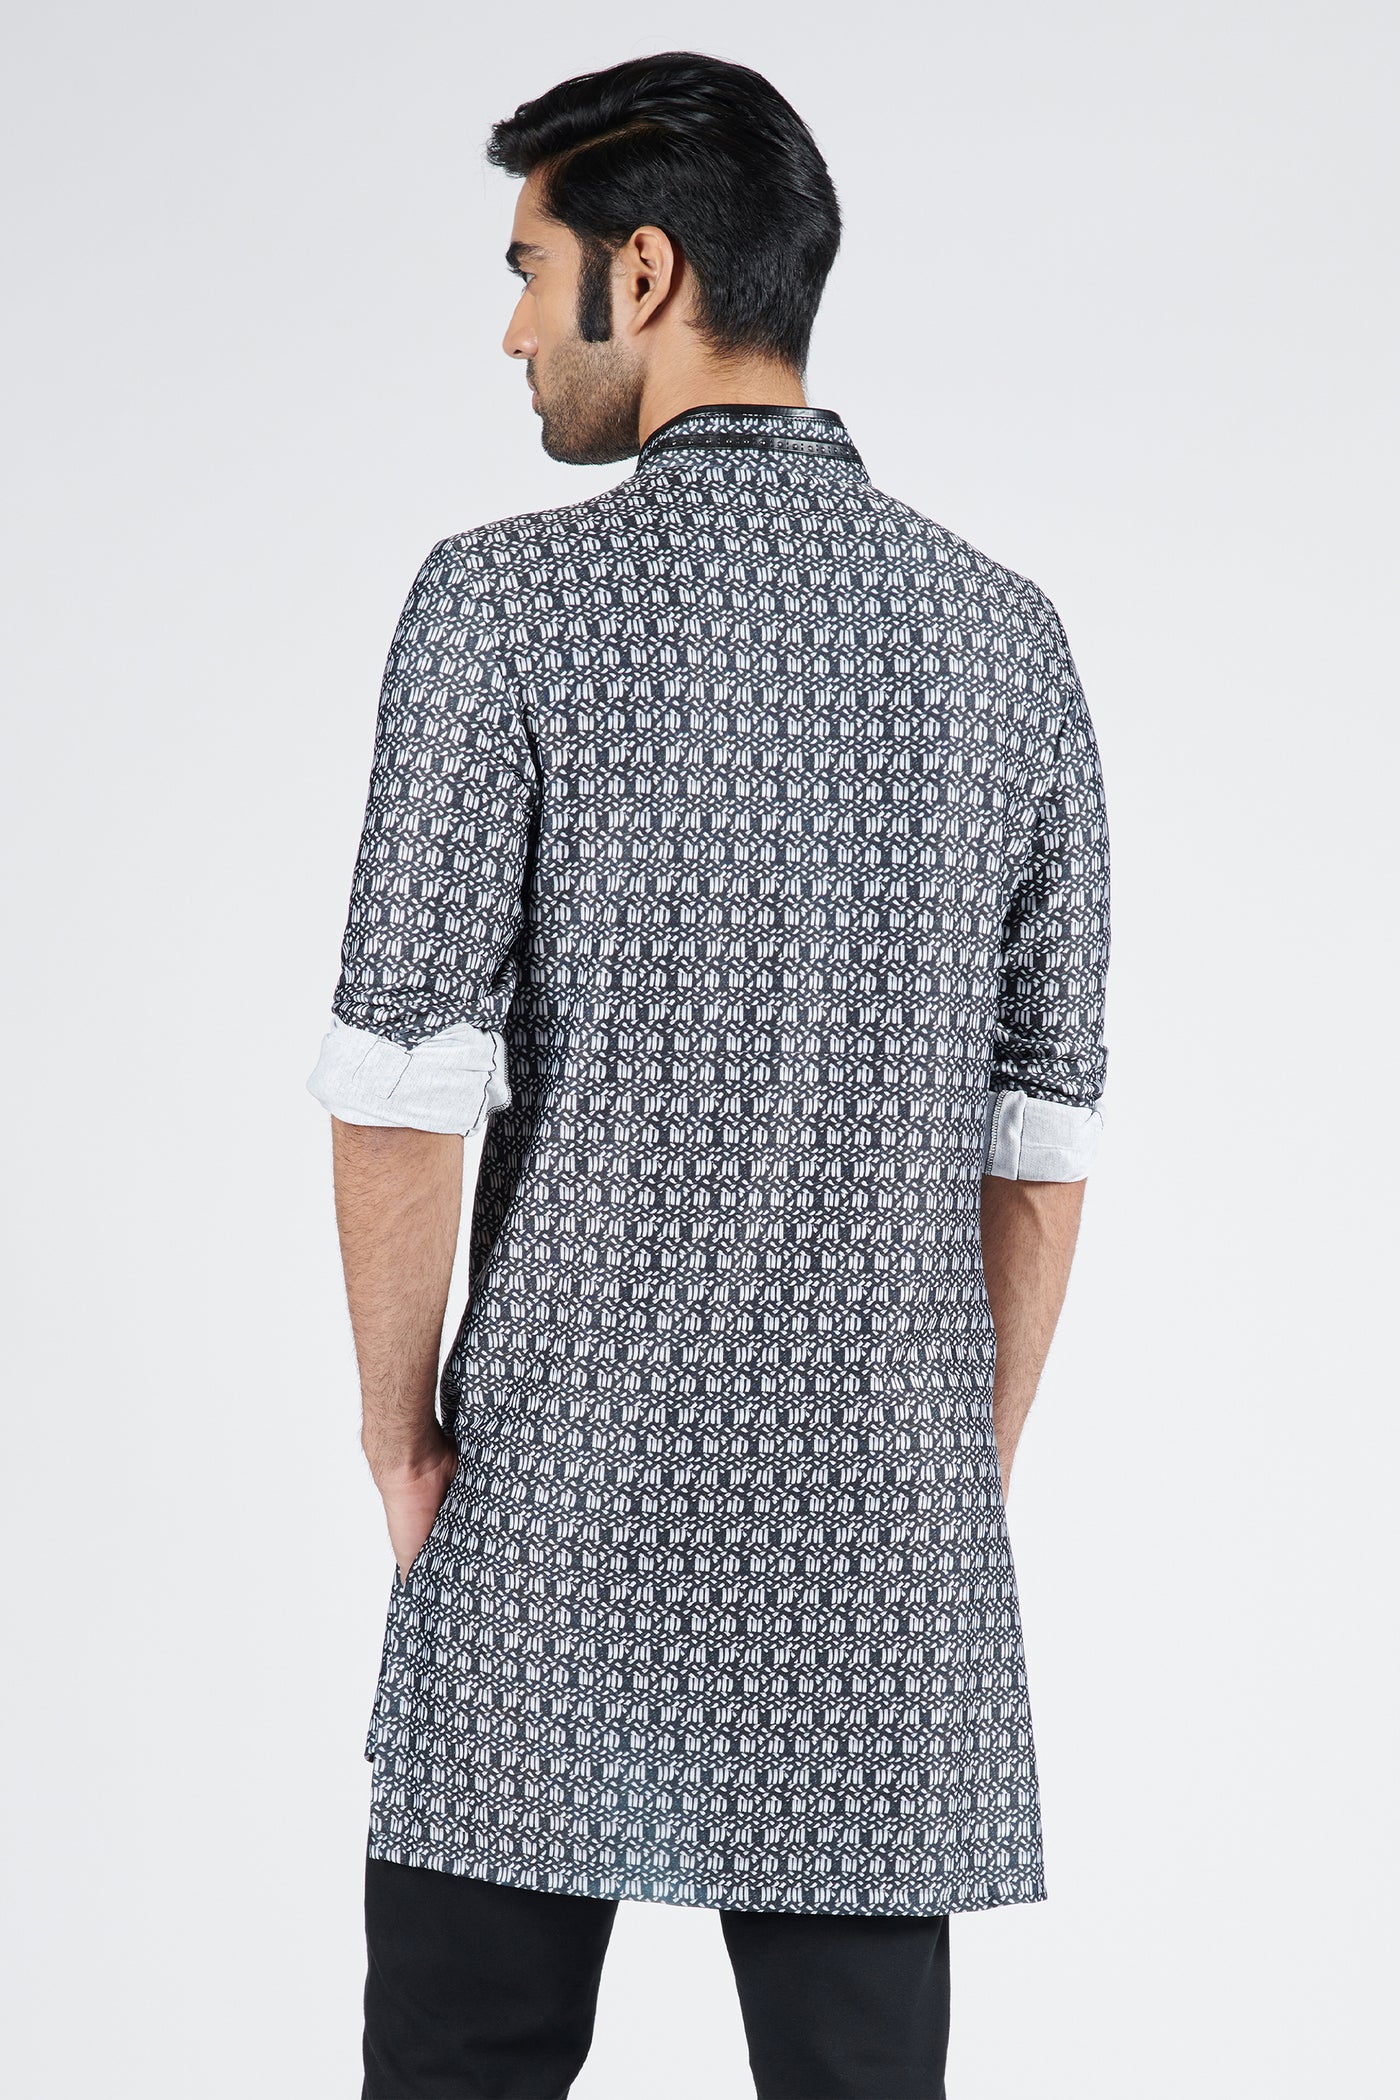 Shantanu & Nikhil Menswear Braid Printed Slim fit Kurta indian designer wear online shopping melange singapore